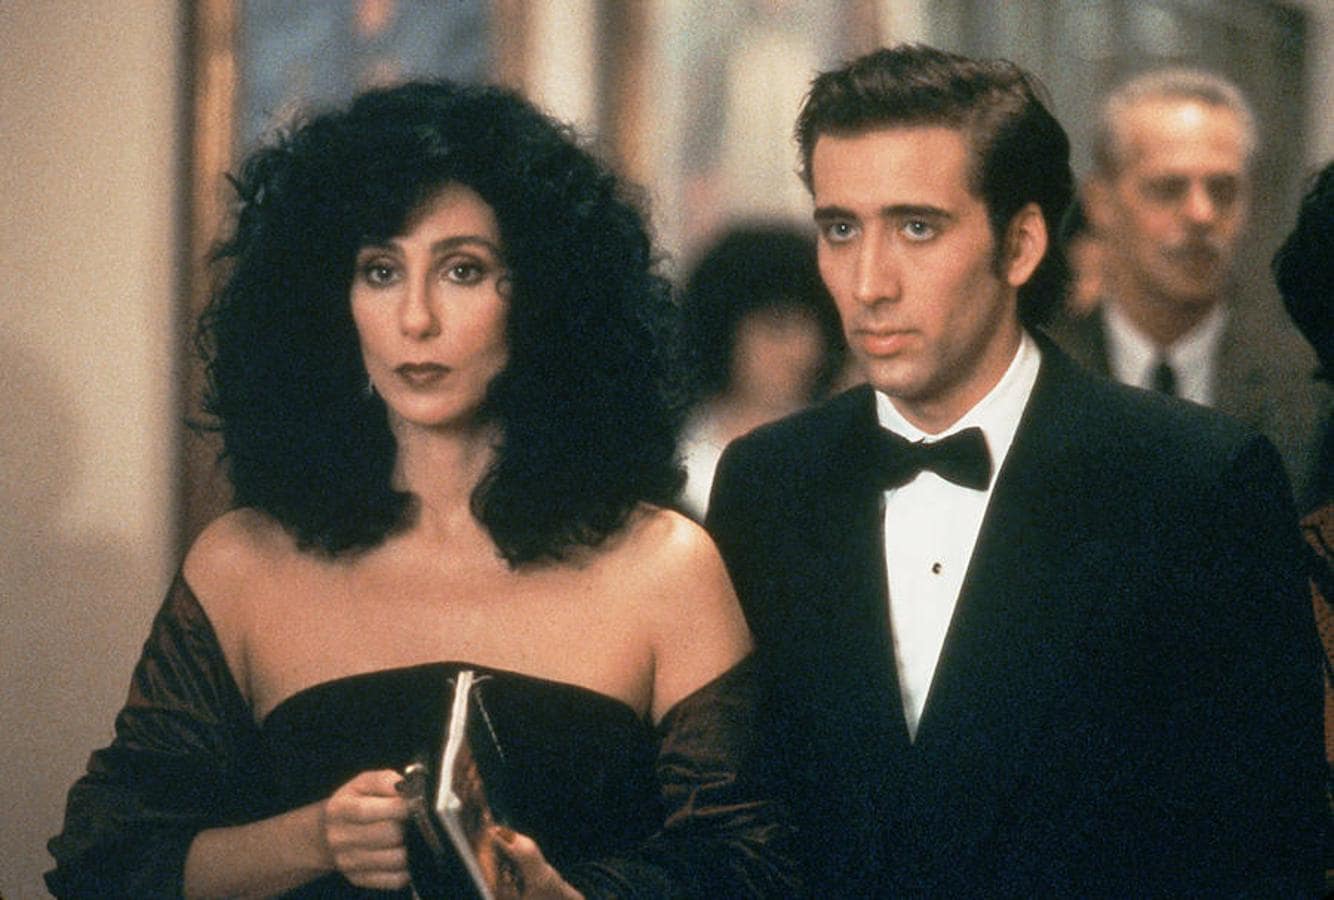 Hechizo de luna (1987). Loretta (Cher) decide contraer matrimonio con Johnny. Éste tiene que viajar a Sicilia para visitar a su madre enferma y pide a su prometida que invite a la boda a su hermano Rionnie (Cage), con el que no se habla.Tras conocerse, todo cambiará.